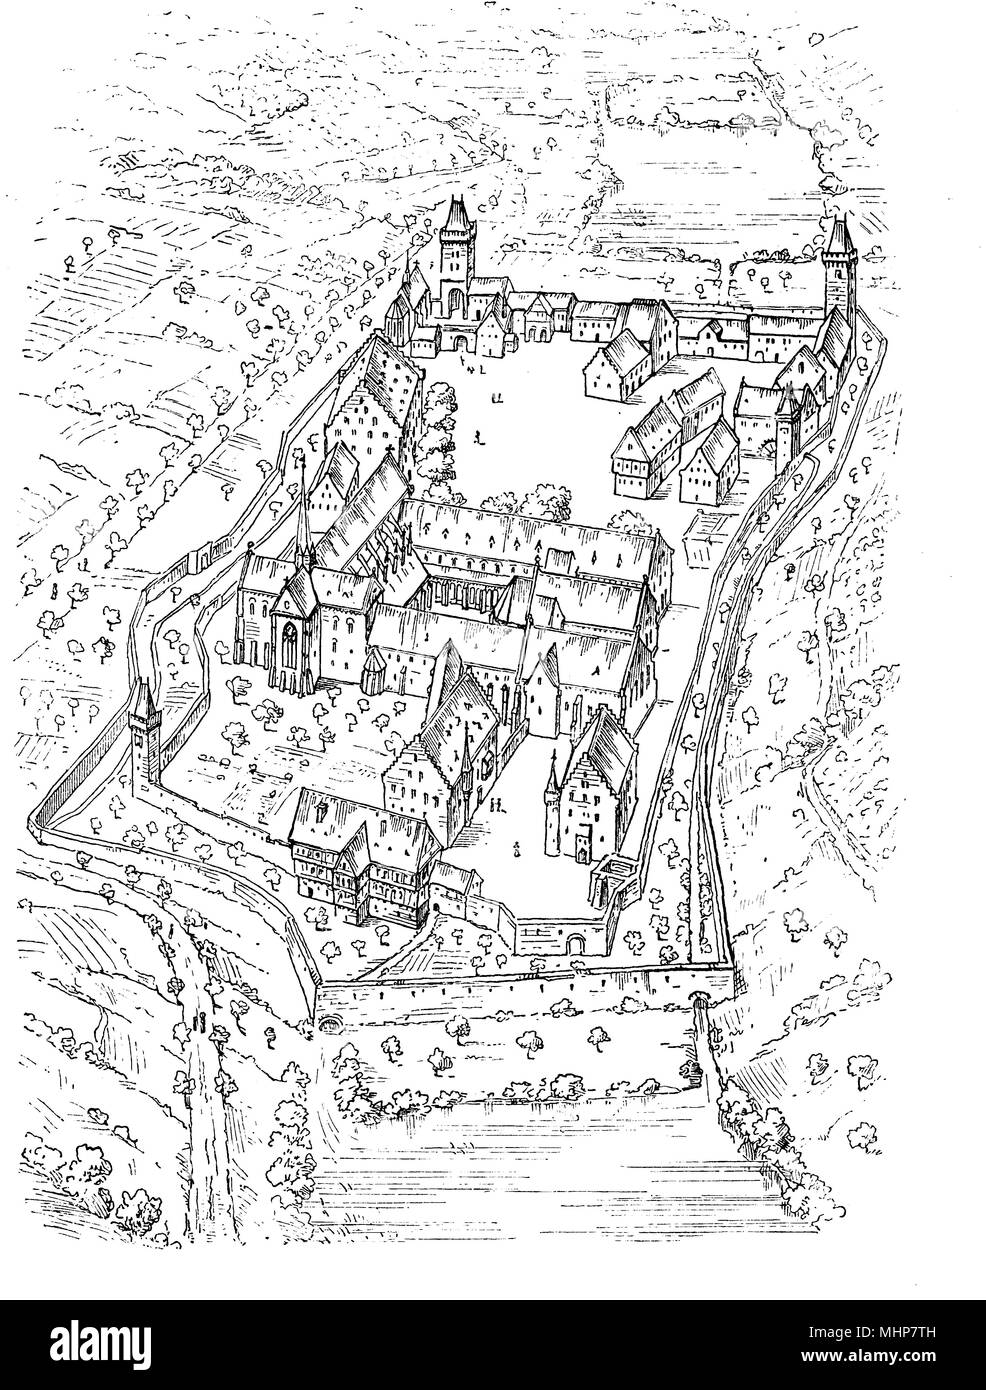 Monastero di Maulbronn piano, Cattolica Romana Abbazia cistercense in Germania, fondata nell'anno 1147 Foto Stock